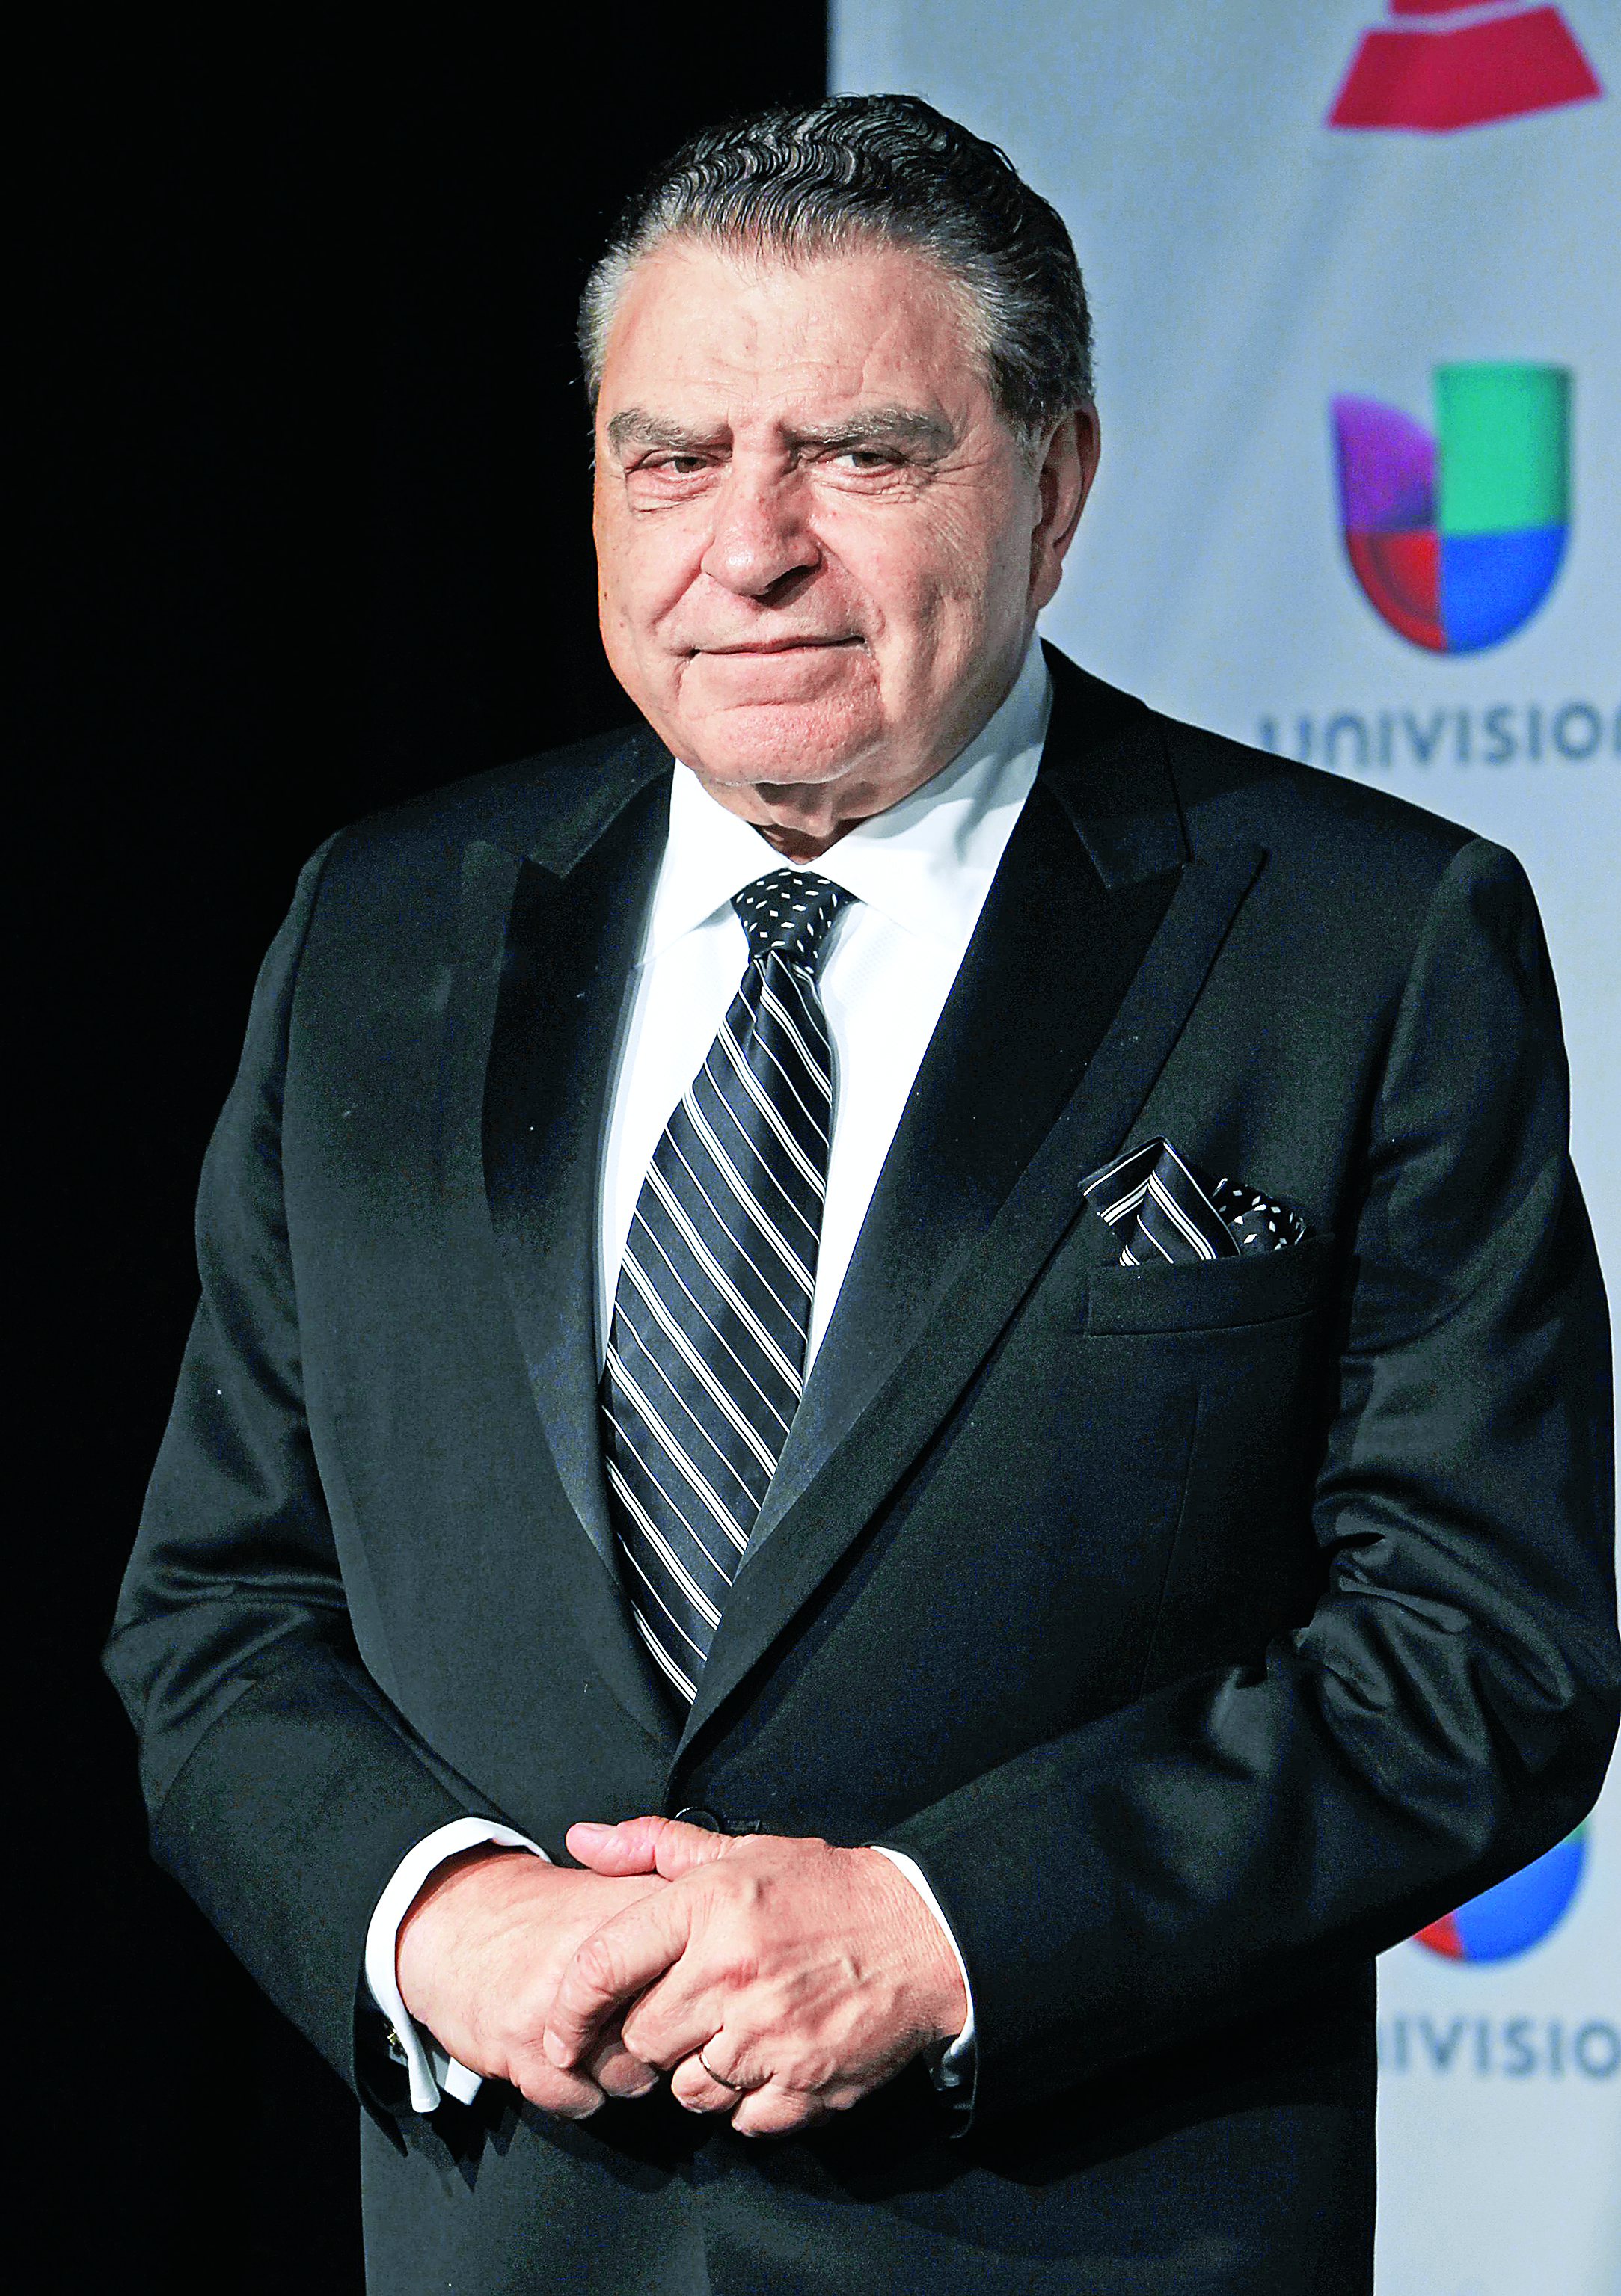 Don Francisco volverá a iniciar "desde abajo" en Telemundo  